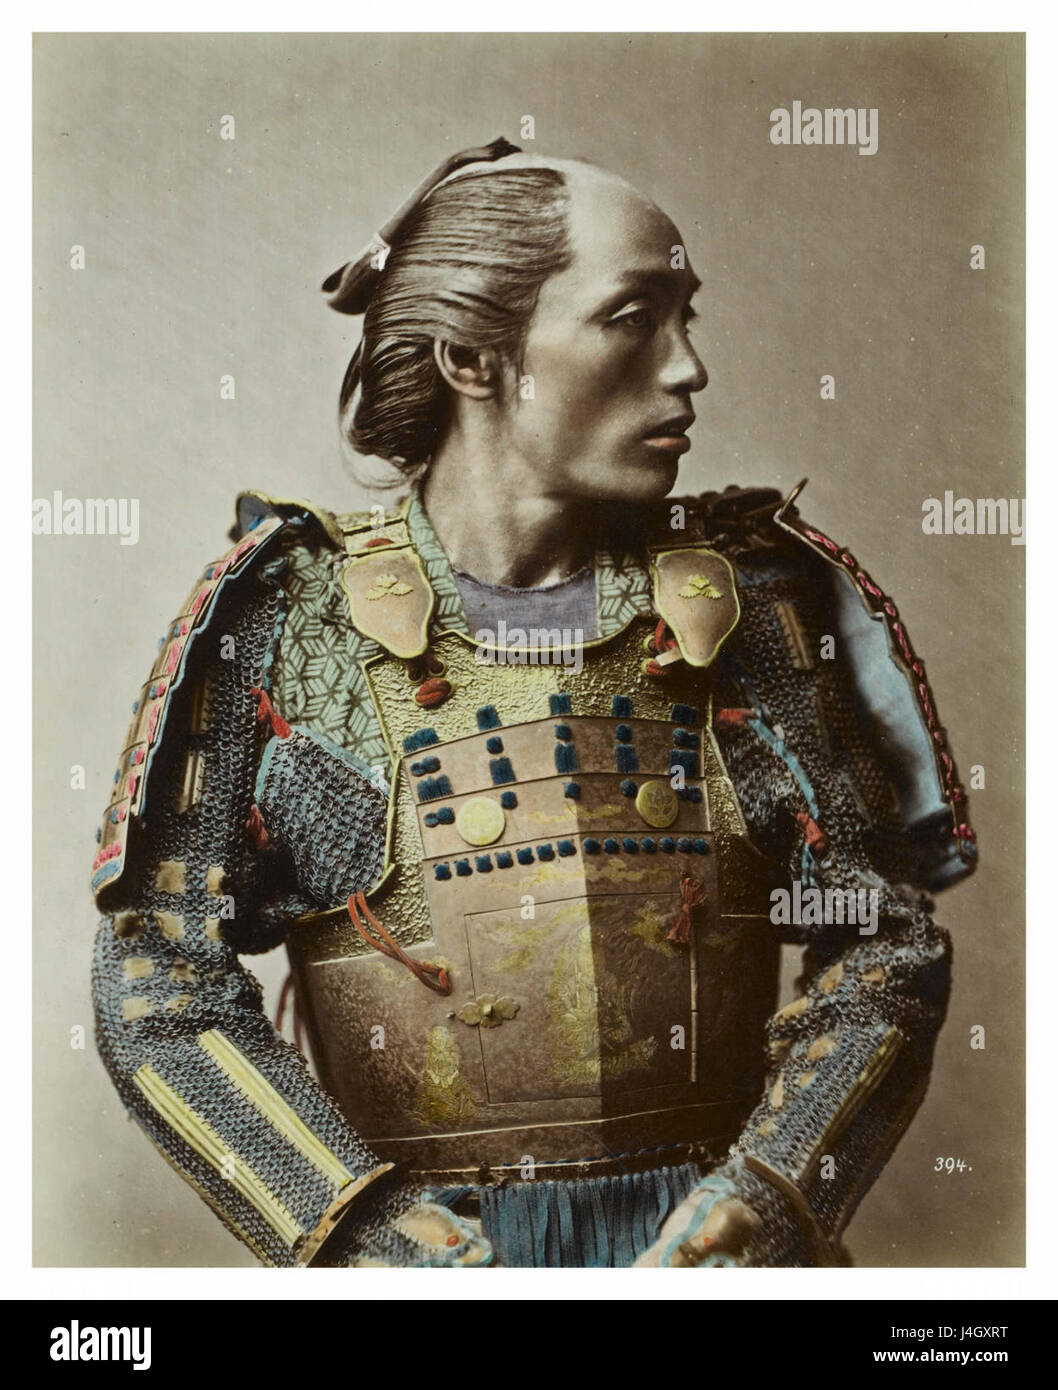 Samurai art hi-res stock photography and images - Alamy